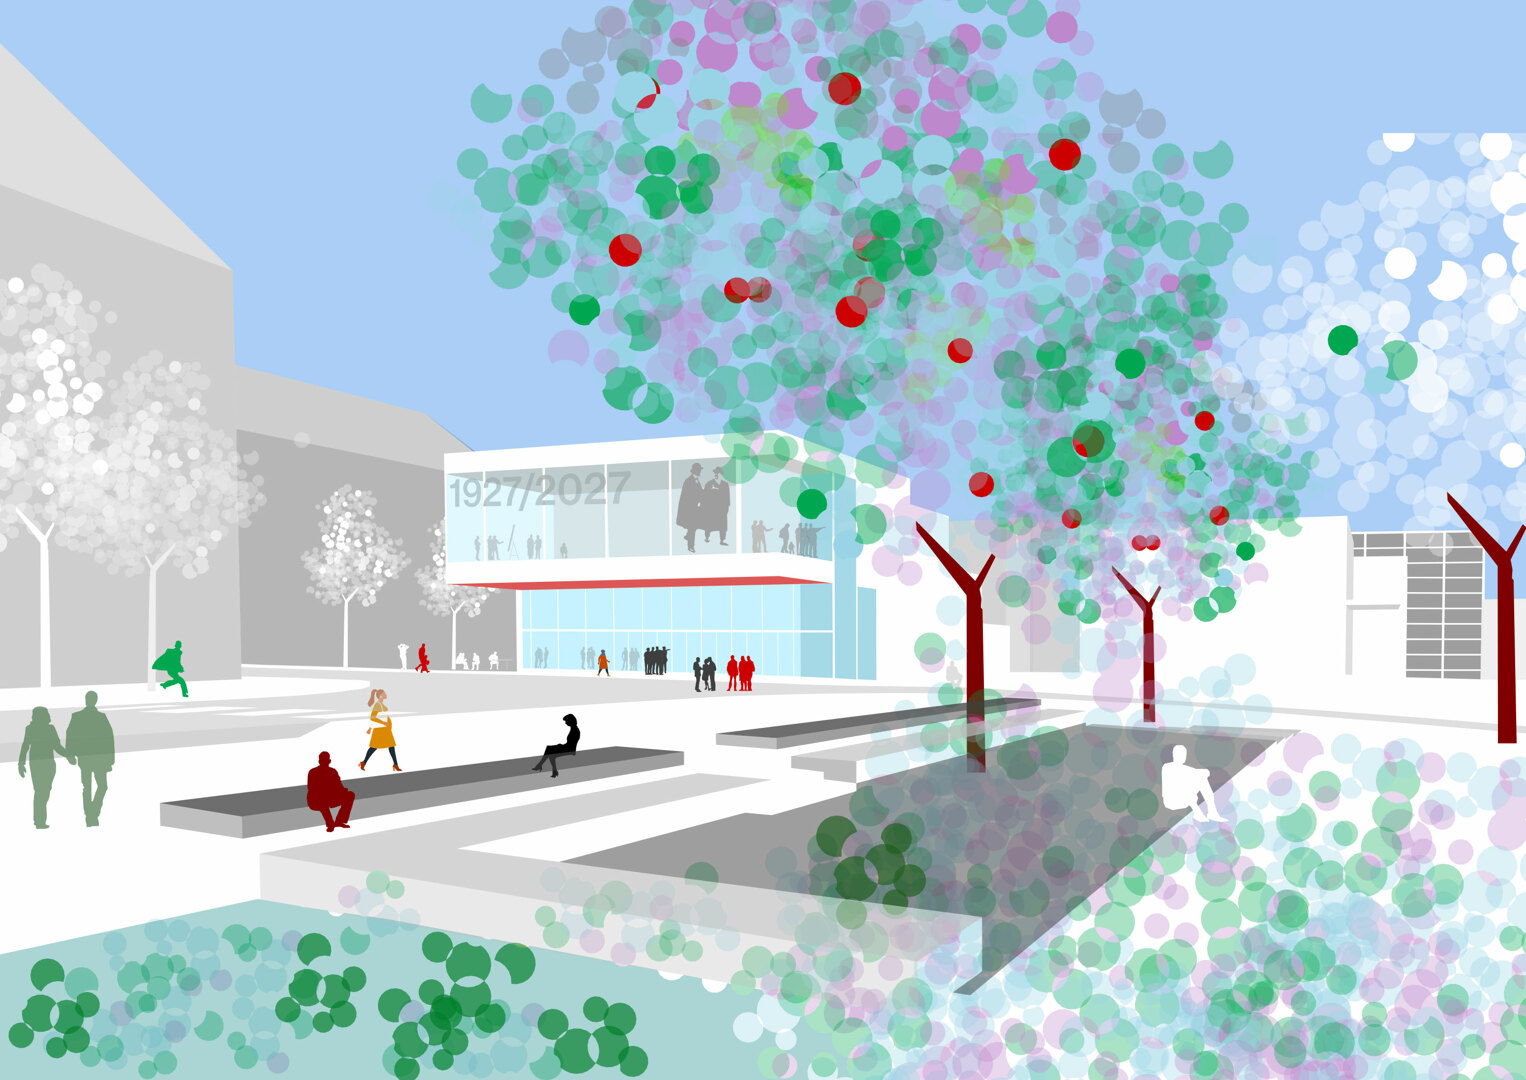 Visualisierung des Empfangs- und Besucherzentrums. Entwurf: Schmutz & Partner mit Scala und Pfrommer + Roeder, alle Stuttgart